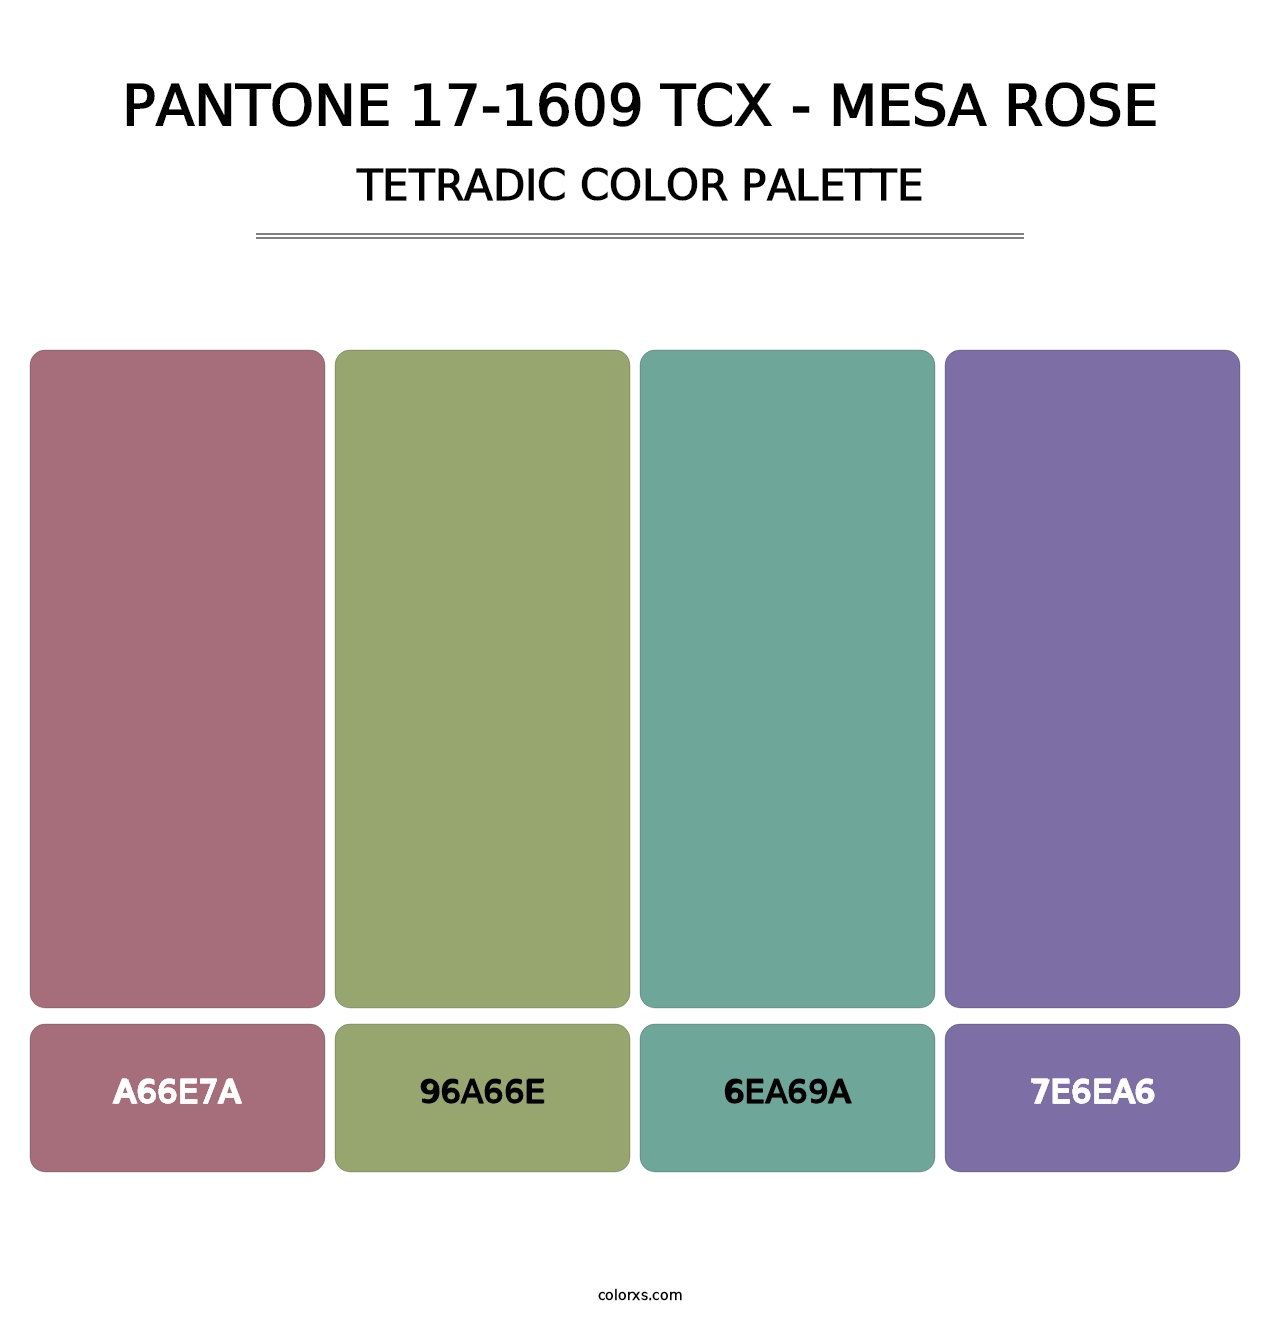 PANTONE 17-1609 TCX - Mesa Rose - Tetradic Color Palette